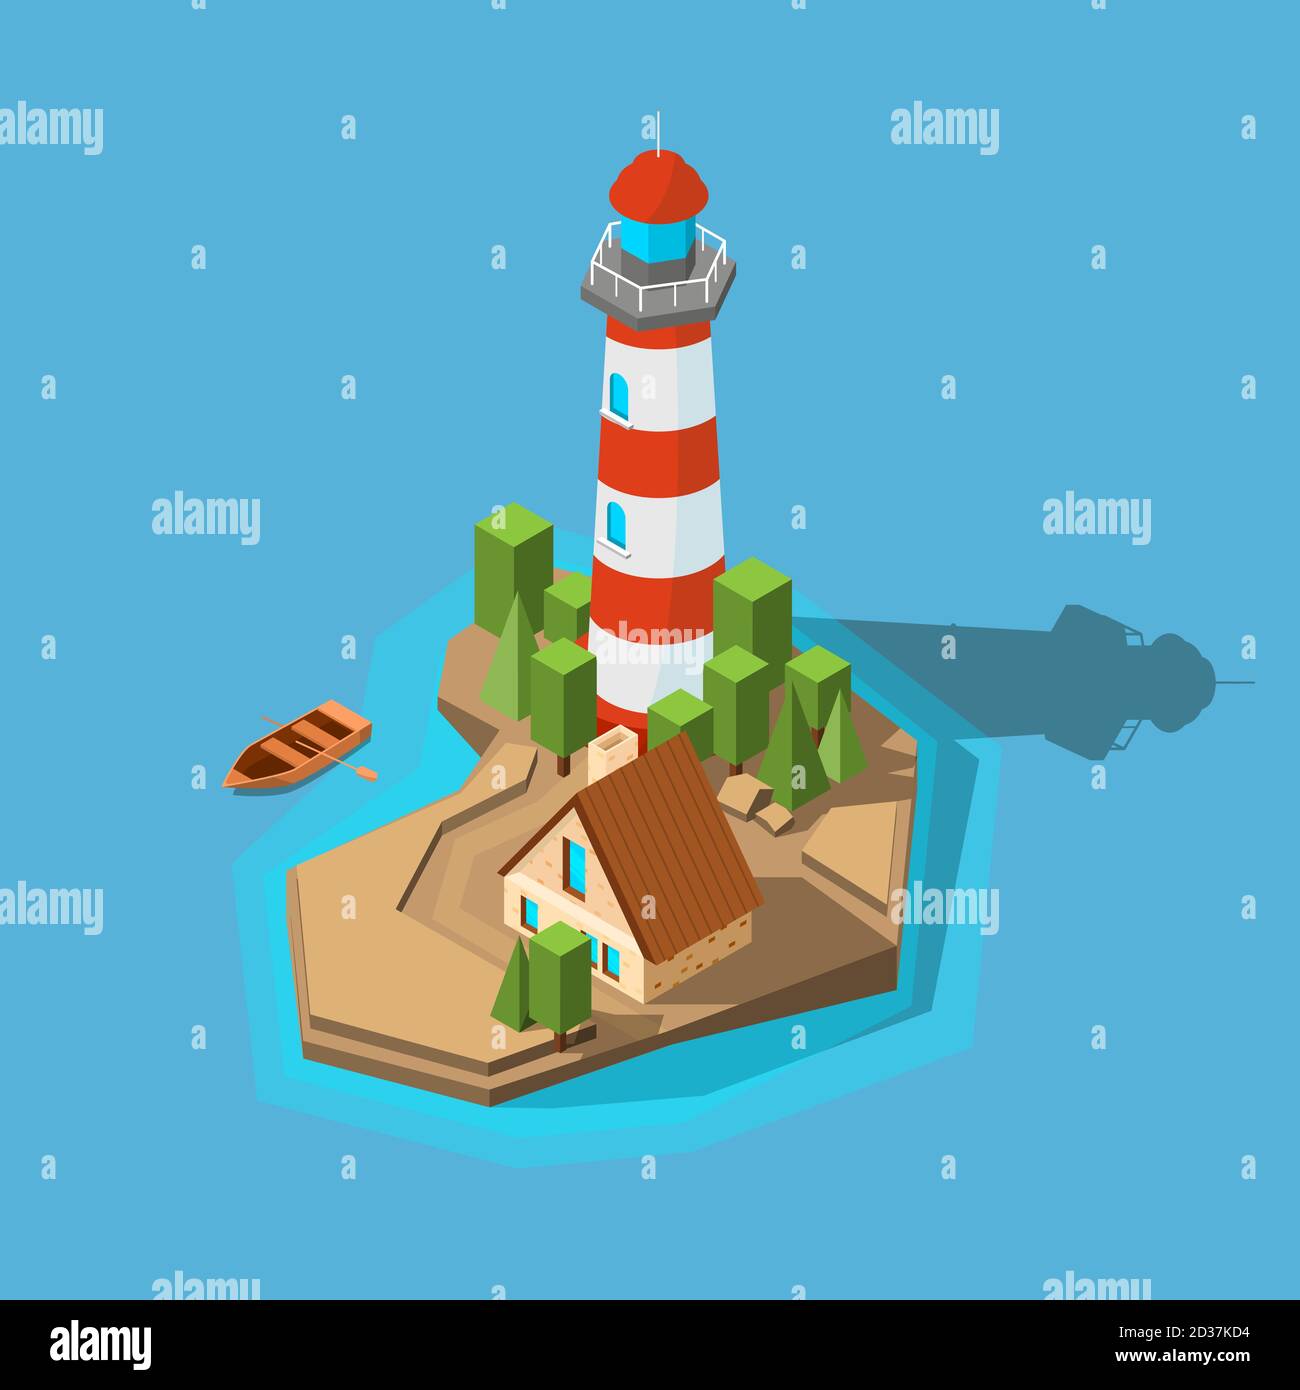 Leuchtturm isometrisch. Meer Ozean Boot Strand kleine Insel mit Navigation Leuchtturm und Gebäude Vektor Bild Stock Vektor